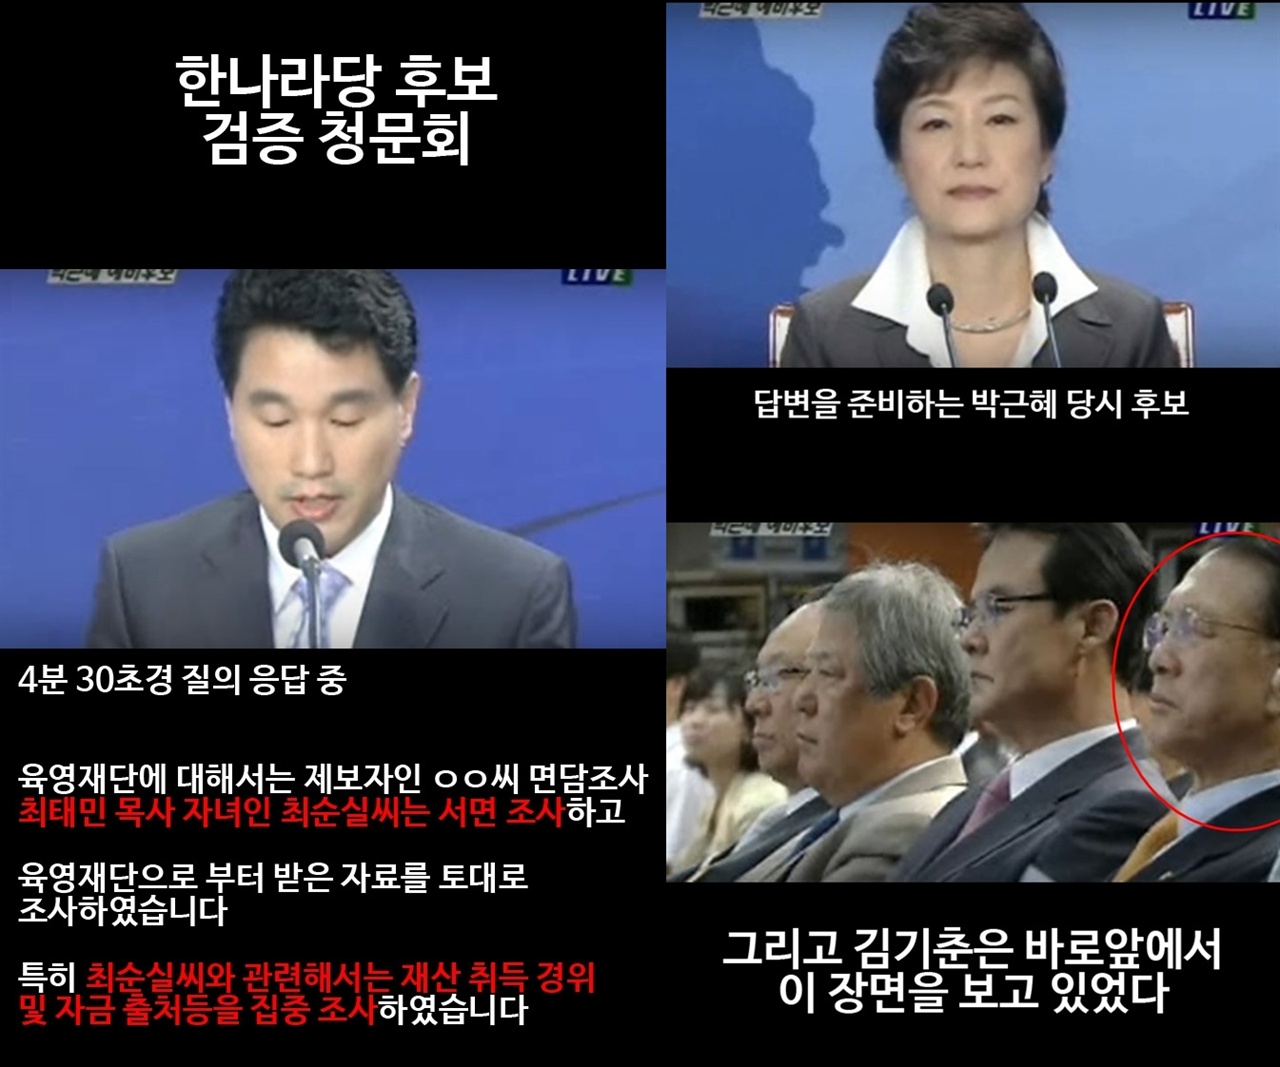 2007년 한나라당 후보 검증 청문회에 박근혜 후보와 그 앞에 앉아 있던 김기춘. 여기서 박근혜는 최태민과 관련된 의혹에 대해 질문 받는다. 이와 관련 최순실의 이름이 여러번 확실하게 언급된다. 